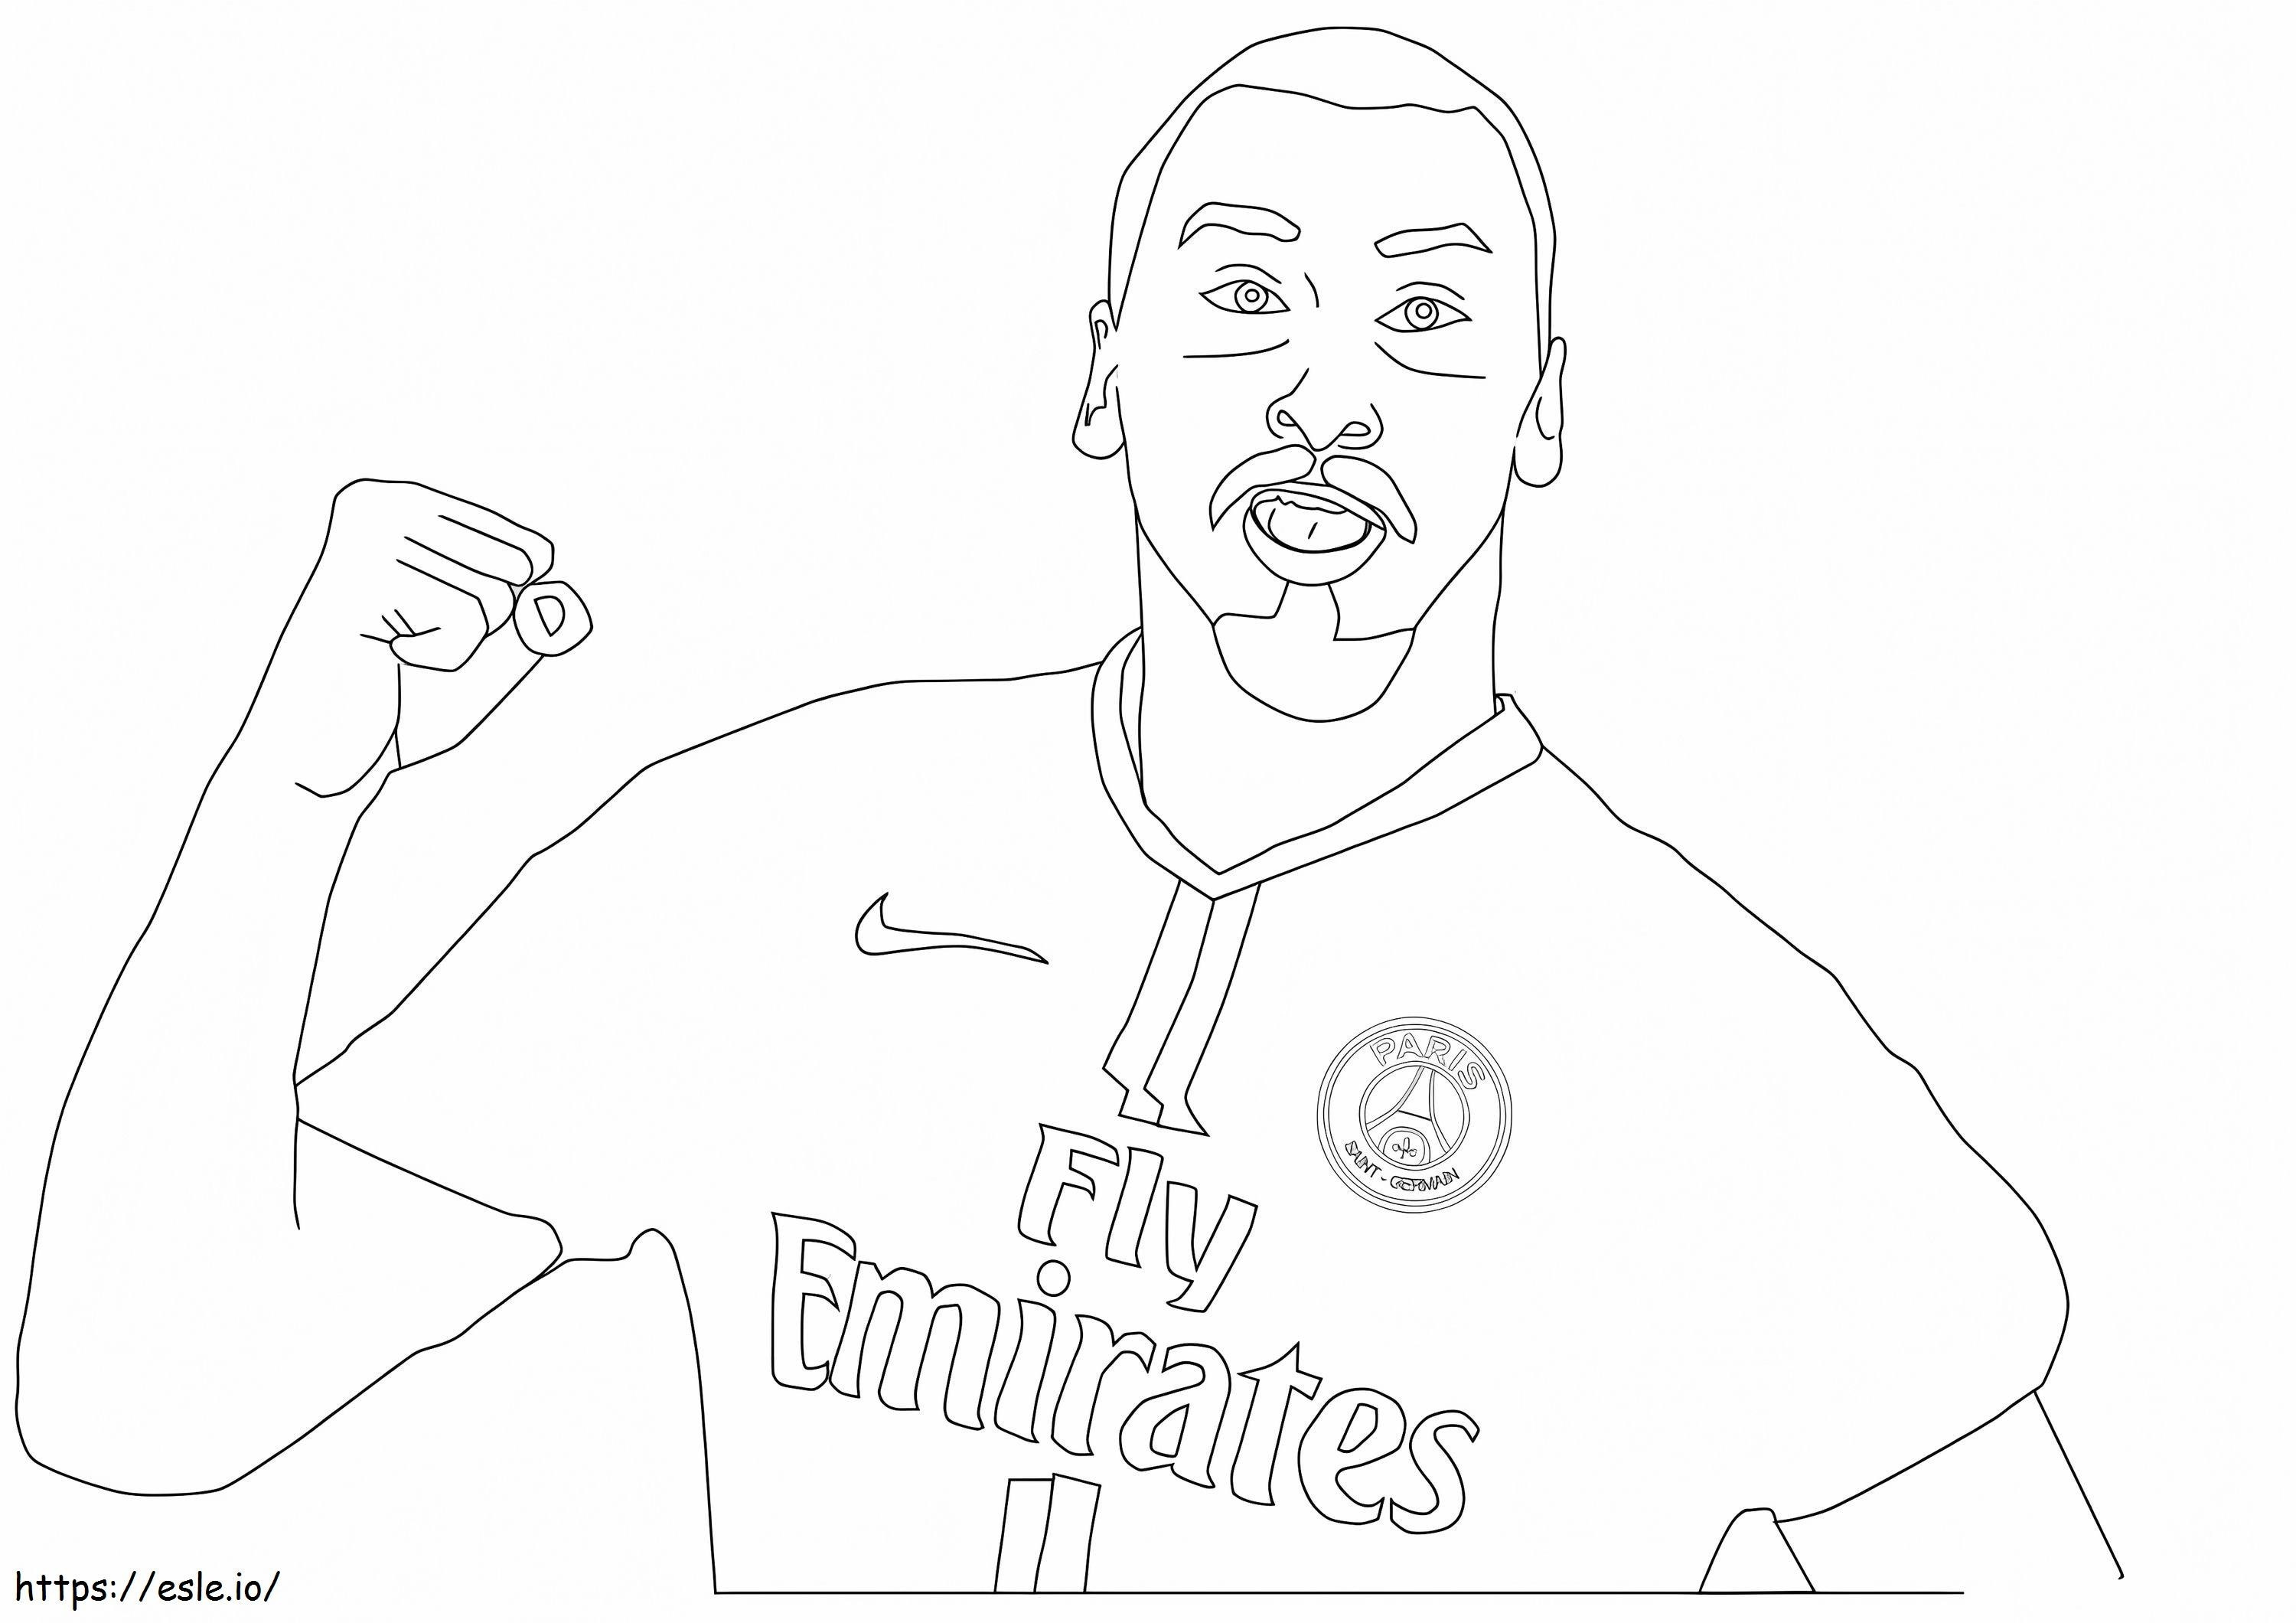 Zlatan Ibrahimovic 3 coloring page